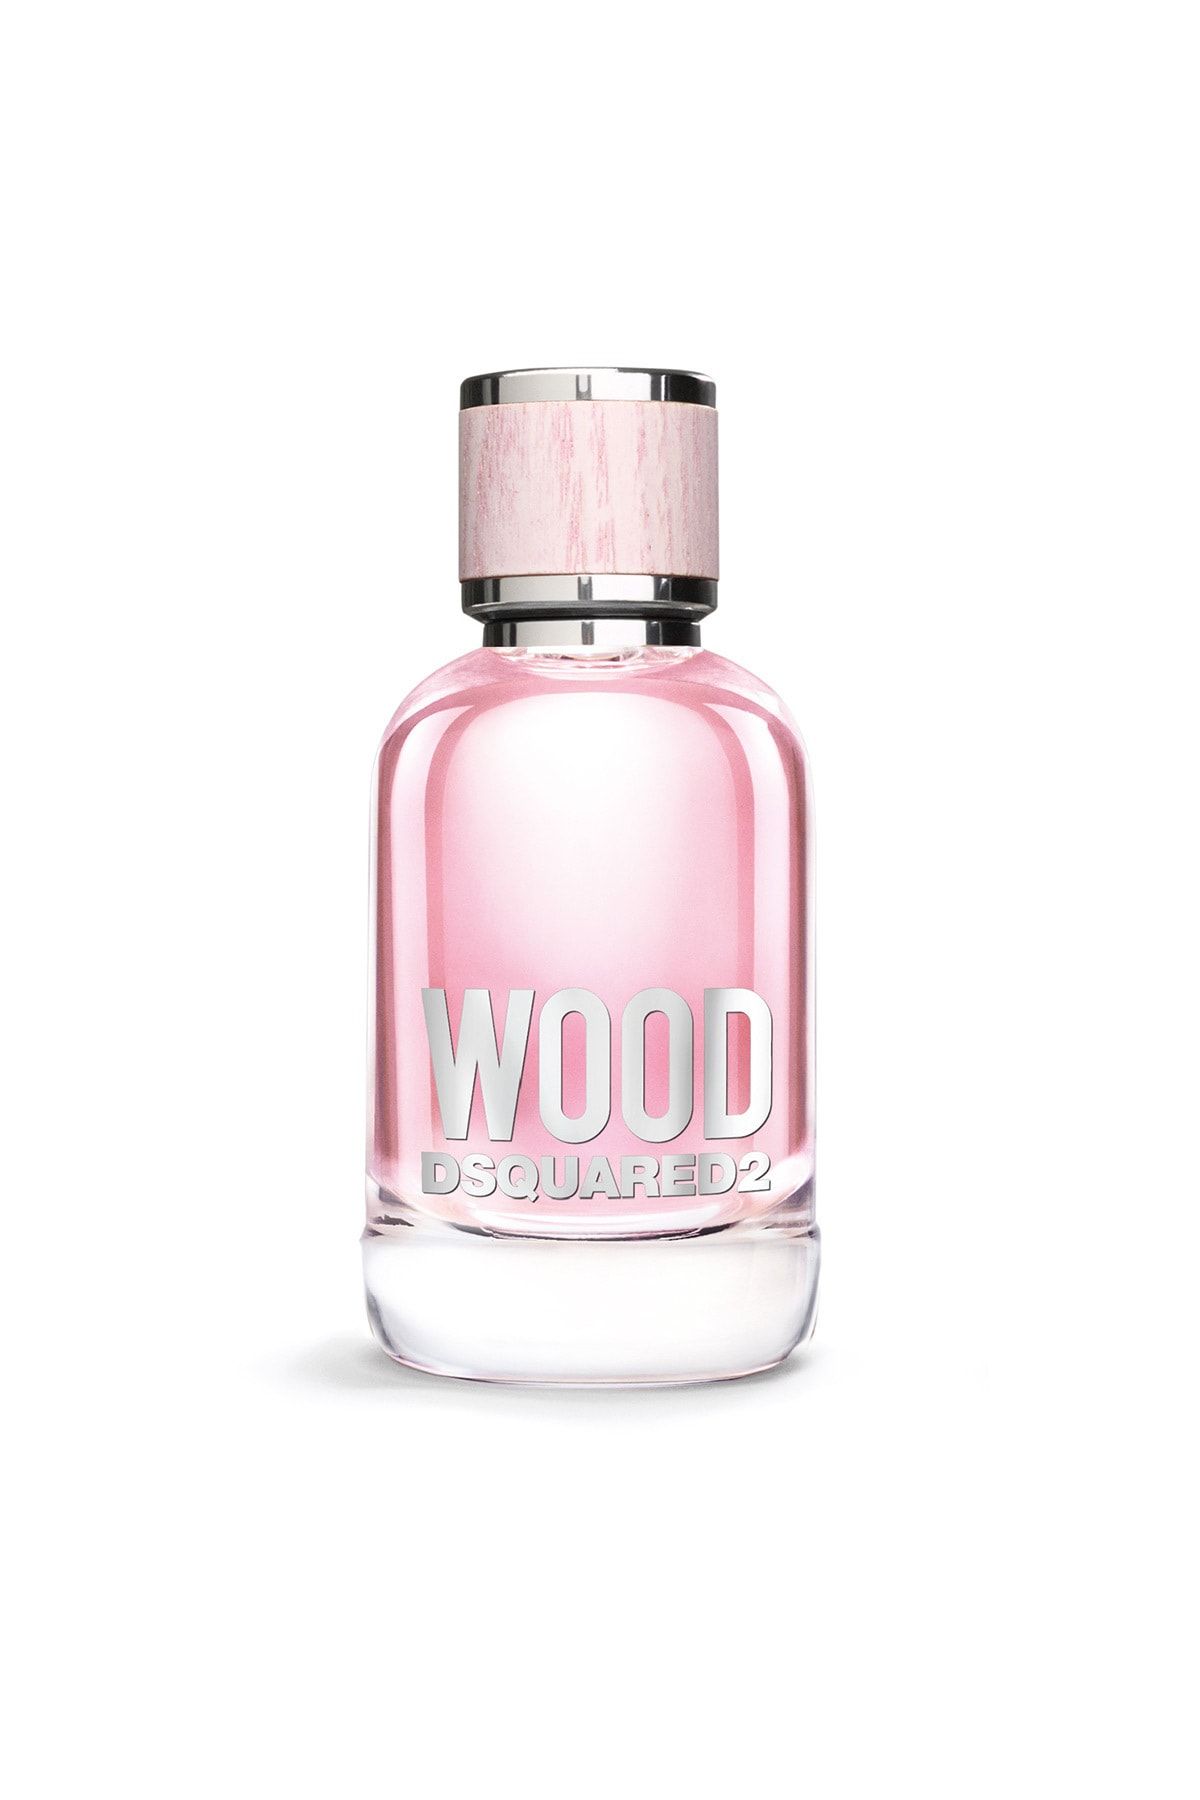 DSquared2 Wood Edt 50 Ml Kadın Parfümü